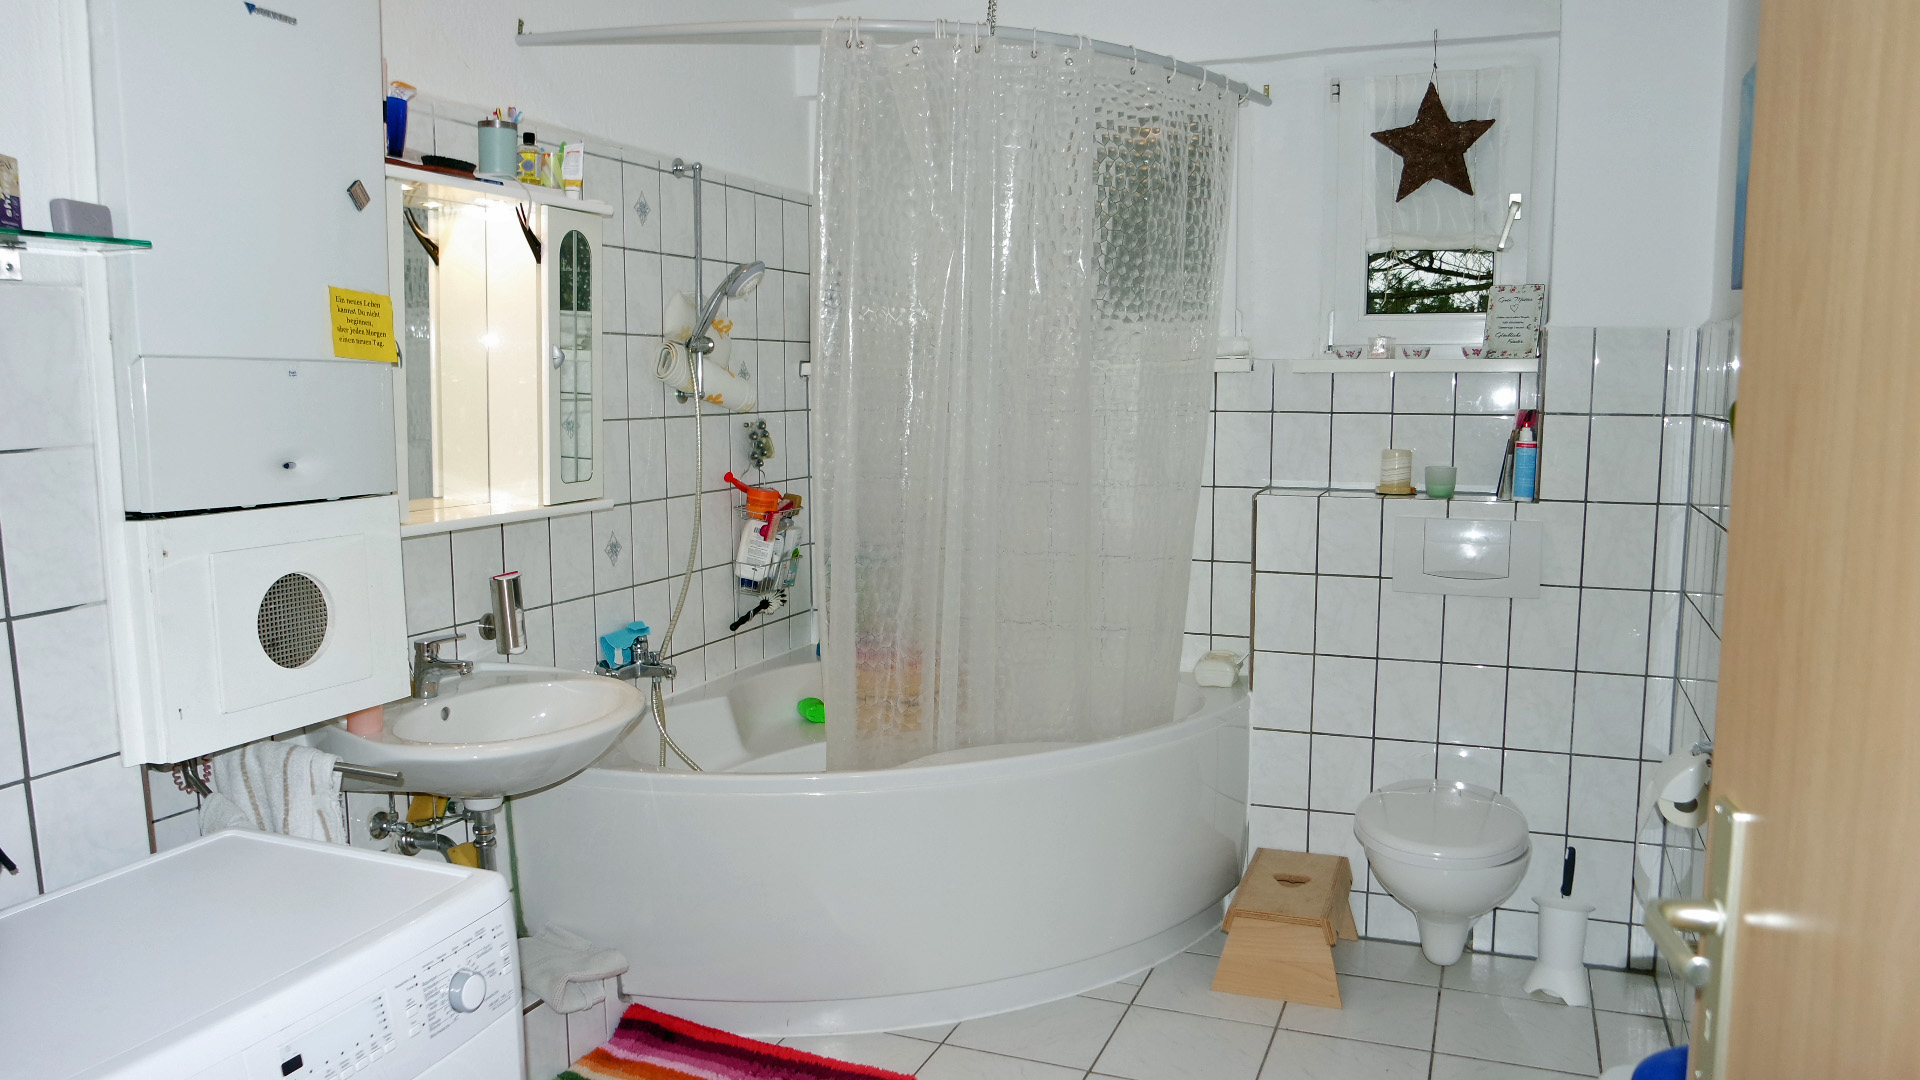 Gummersbach-Karlskamp: Helle, ebenerdige Wohnung mit Parkplatz, 8 m² großes Bad mit Dusch-/ Eckbadewanne